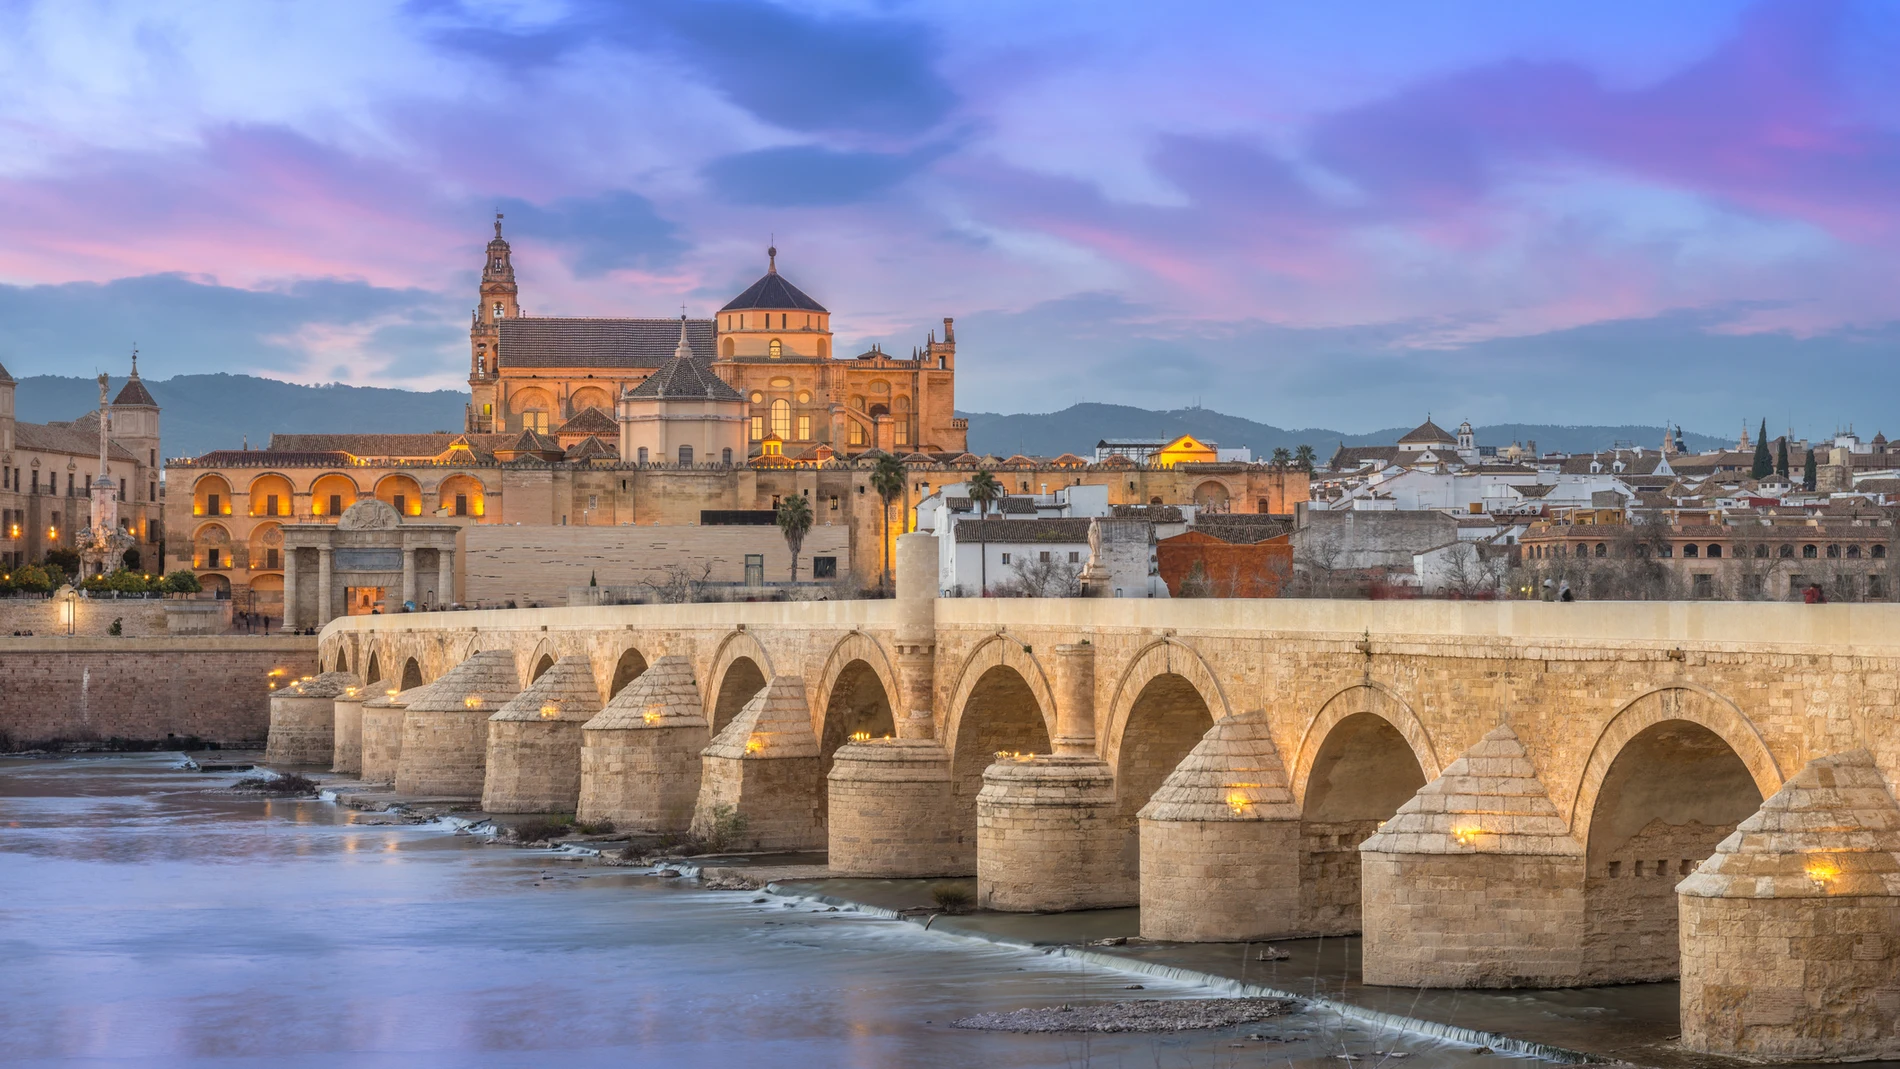 La ubicación de la ciudad de Córdoba es ideal al hallarse cercana al río Guadalquivir